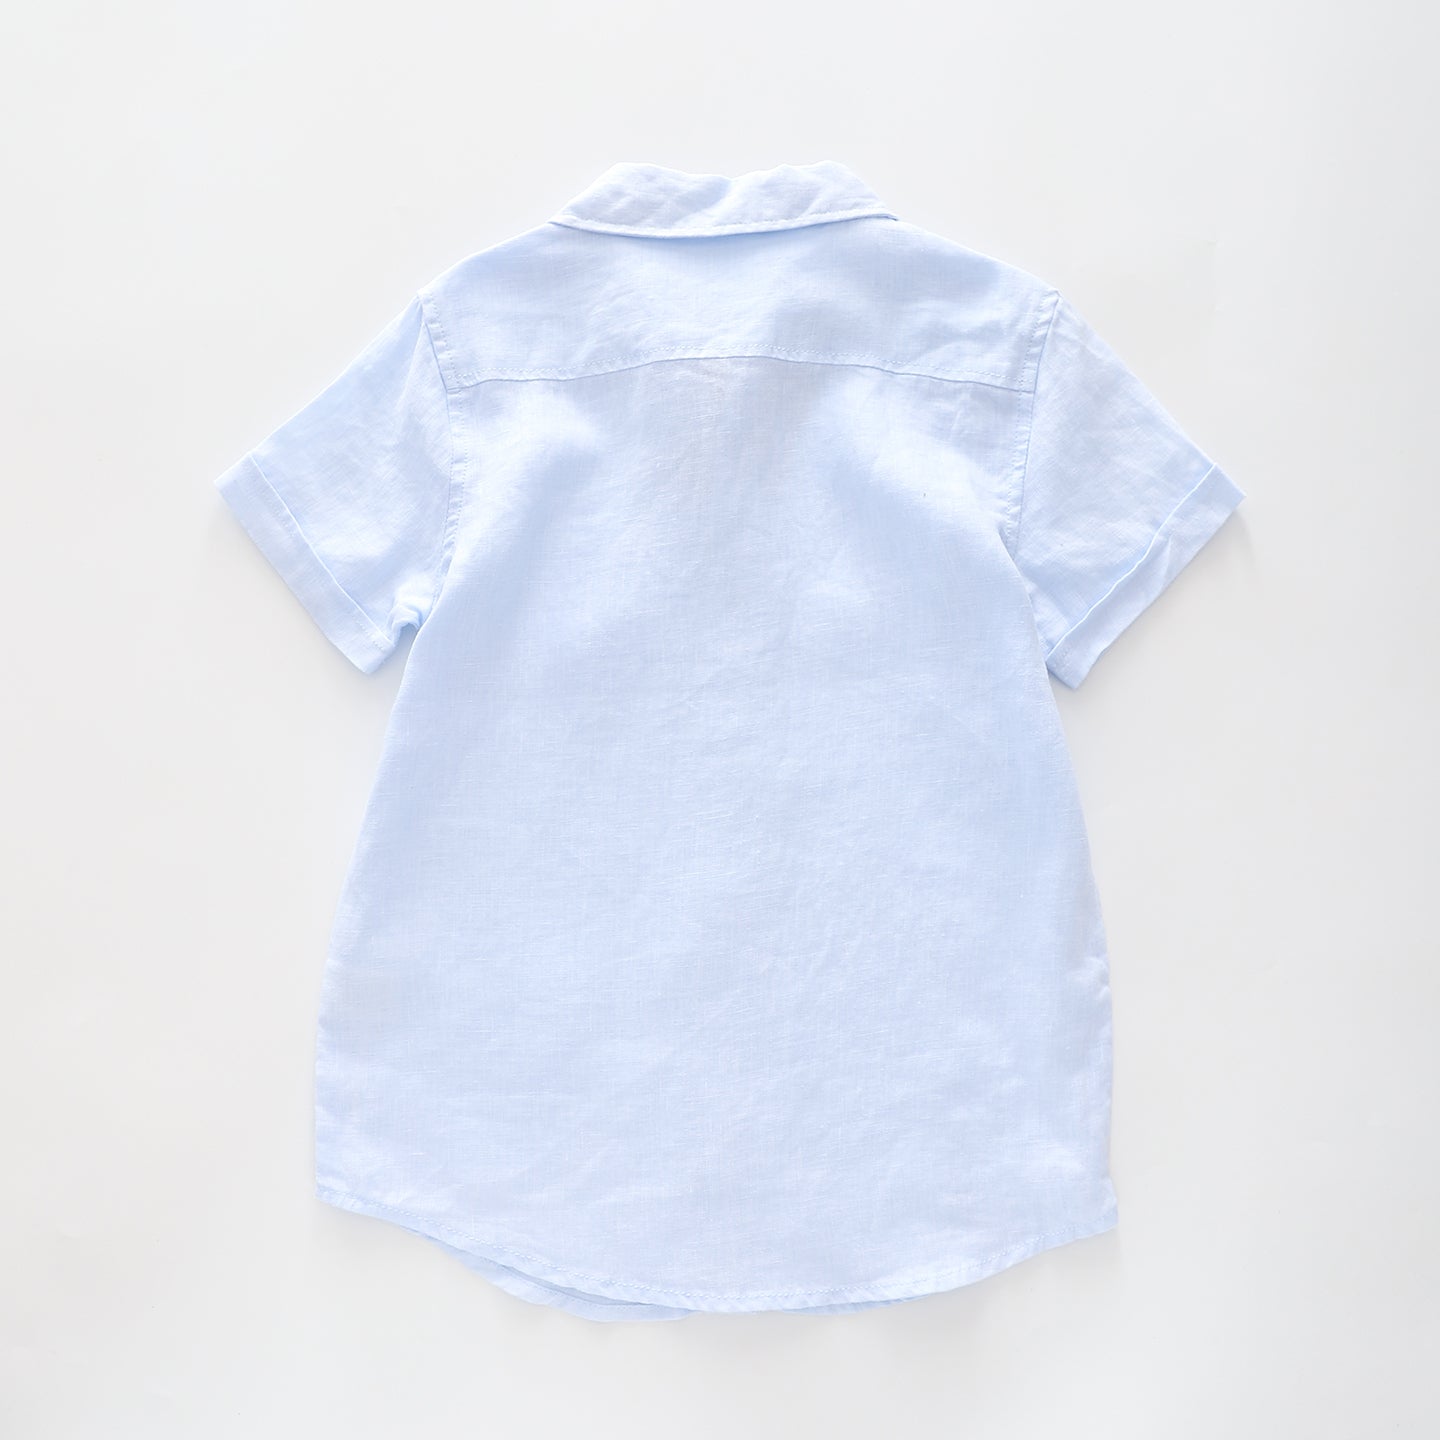 Boy's Baby Blue Linen Collared Shirt